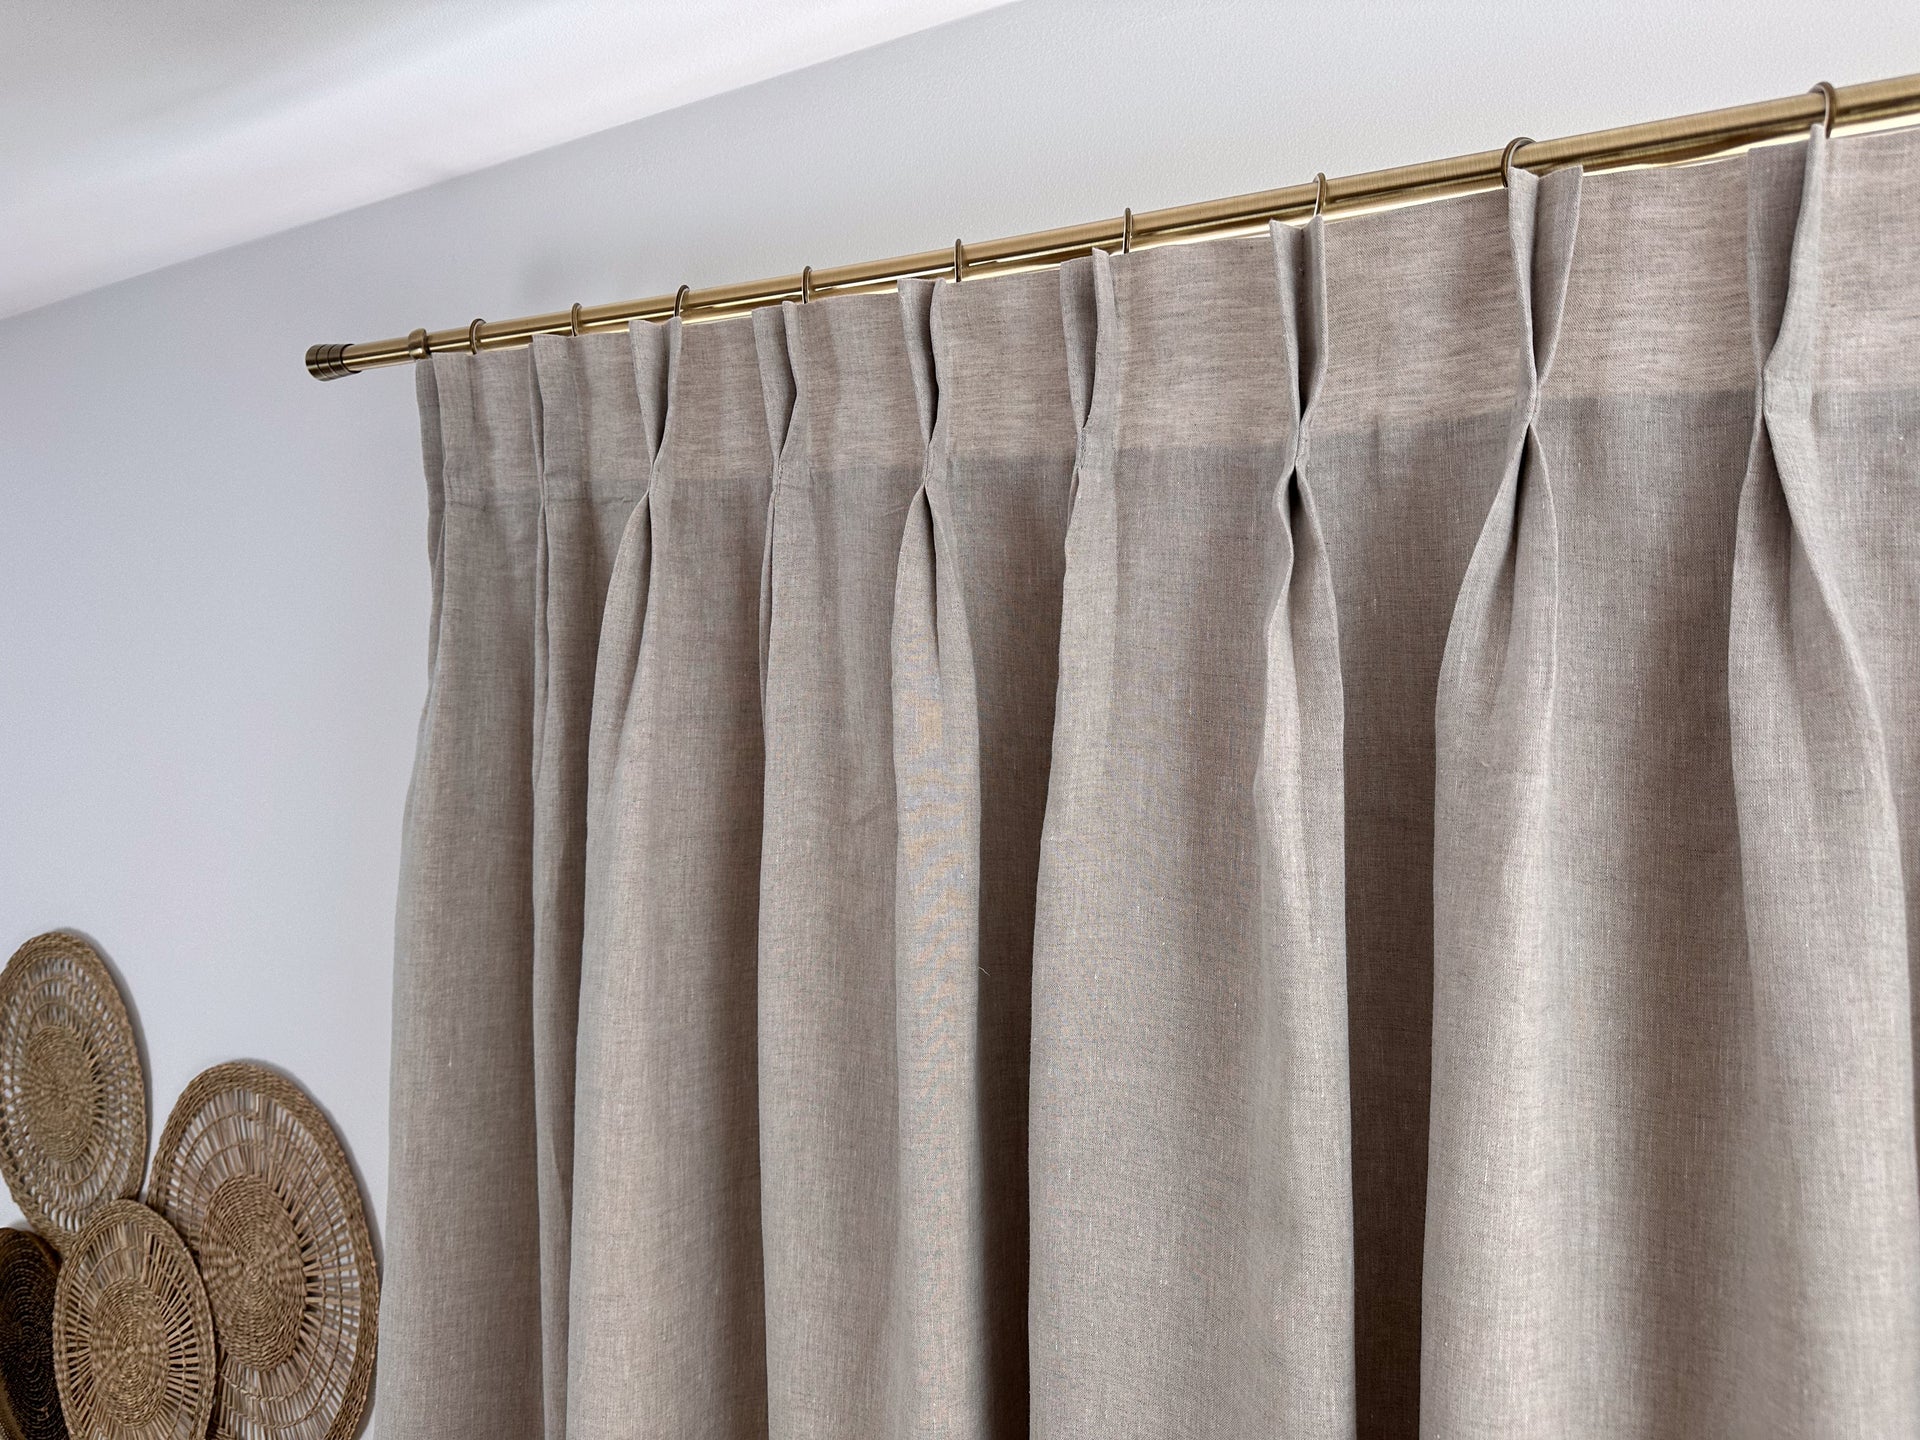 Curtain Headings - The Curtain Company